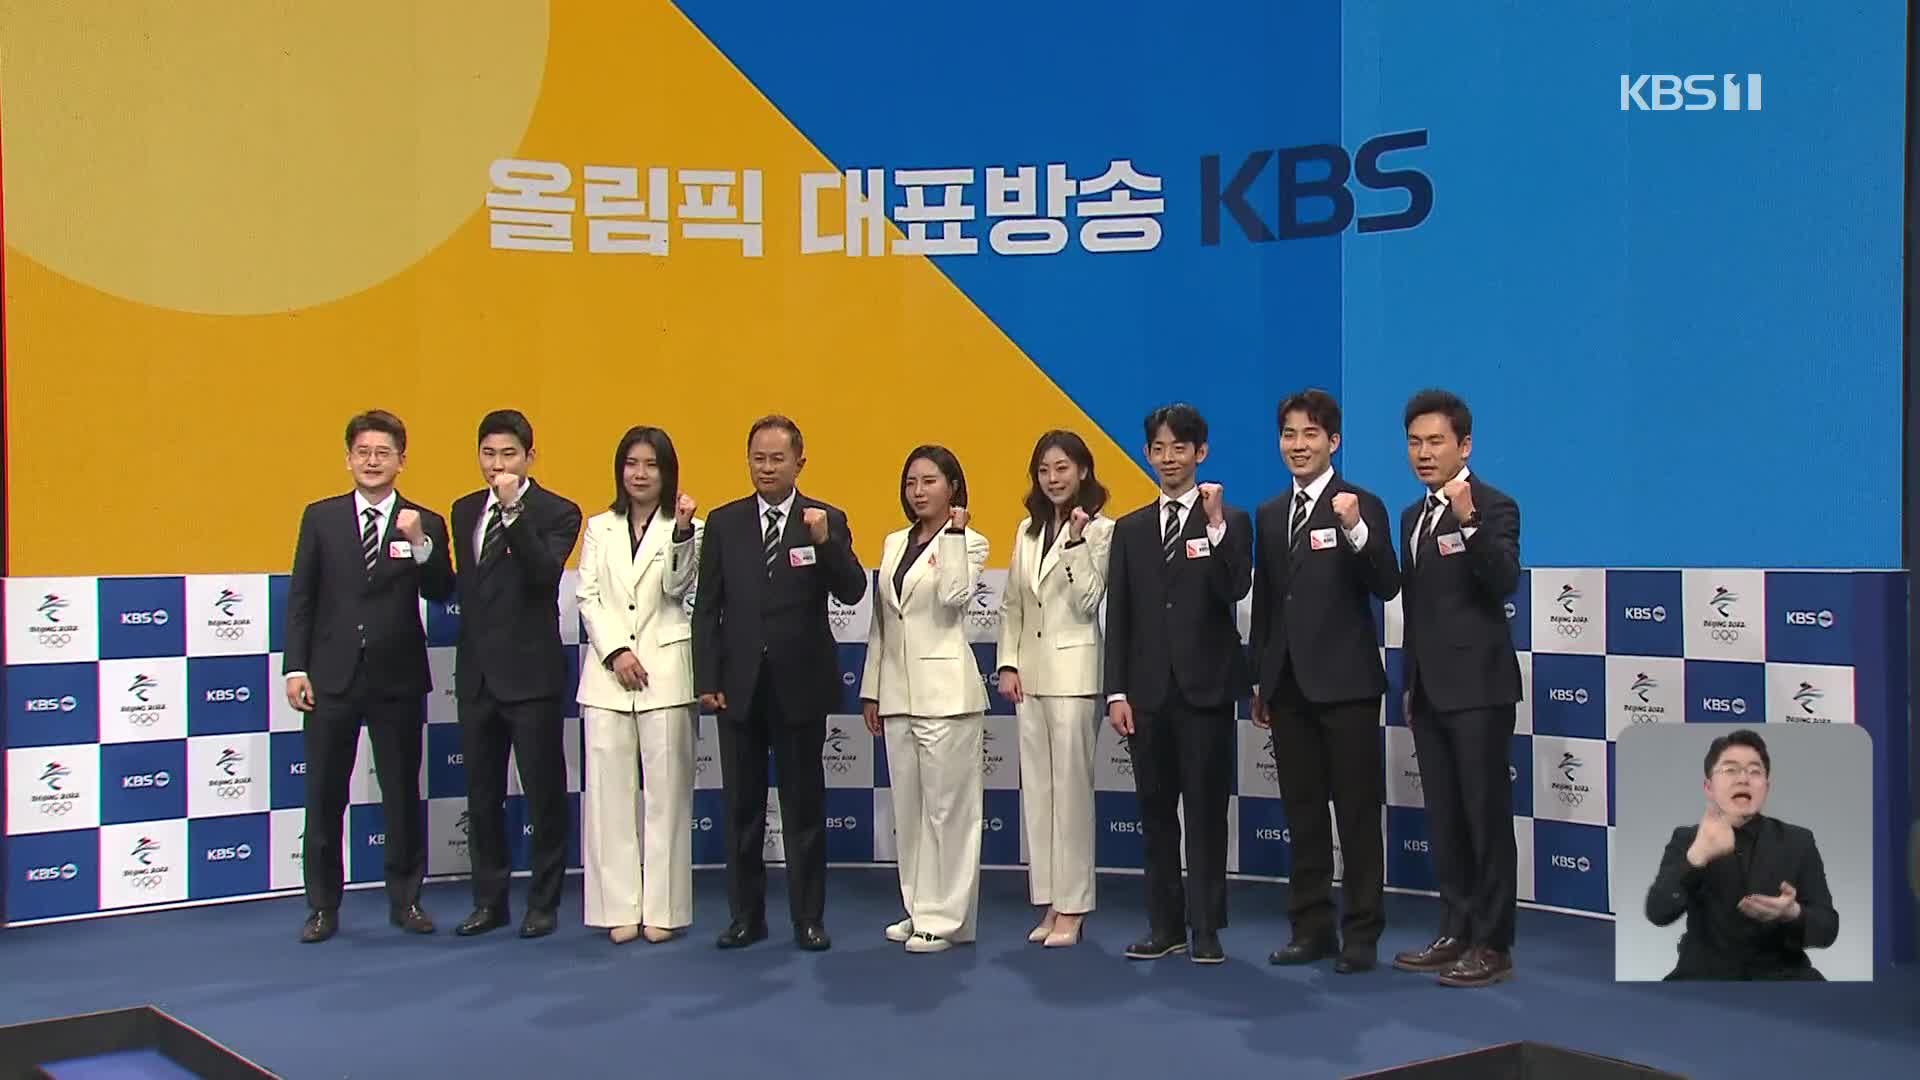 2022 우리의 겨울, KBS 금빛 해설 드림팀이 떴다!